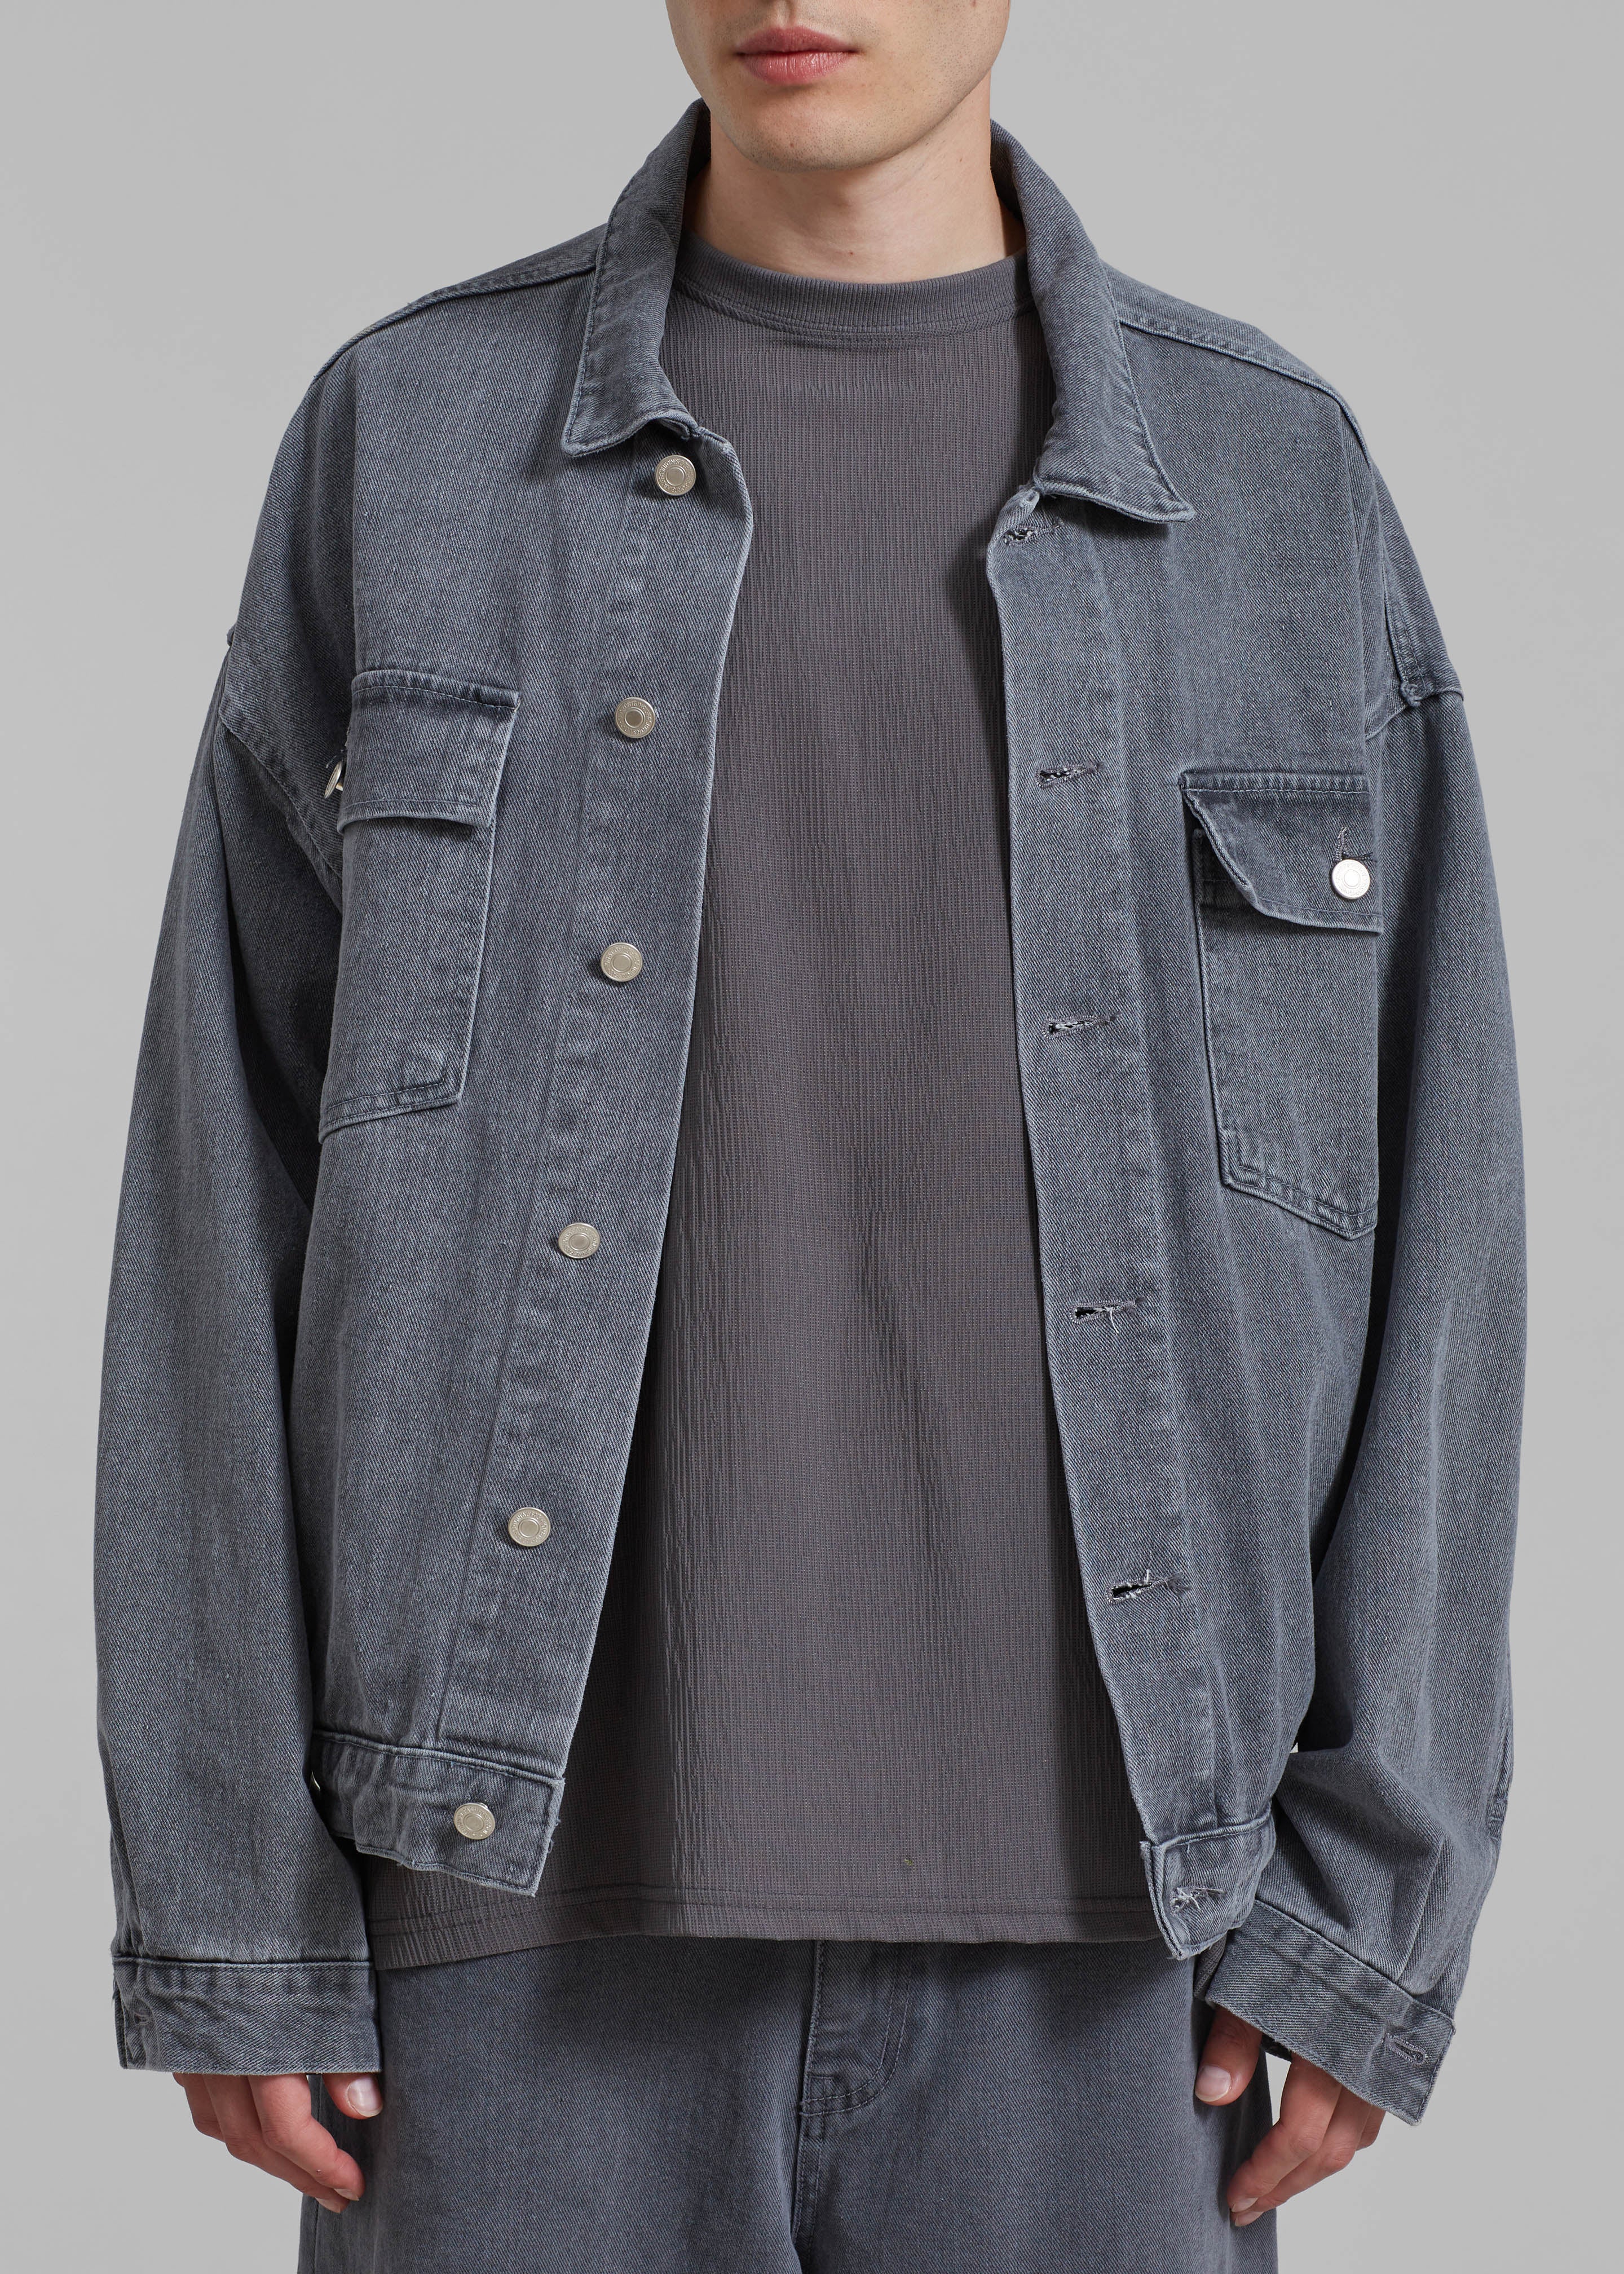 Connor Oversized Denim Jacket - Grey Wash - 2